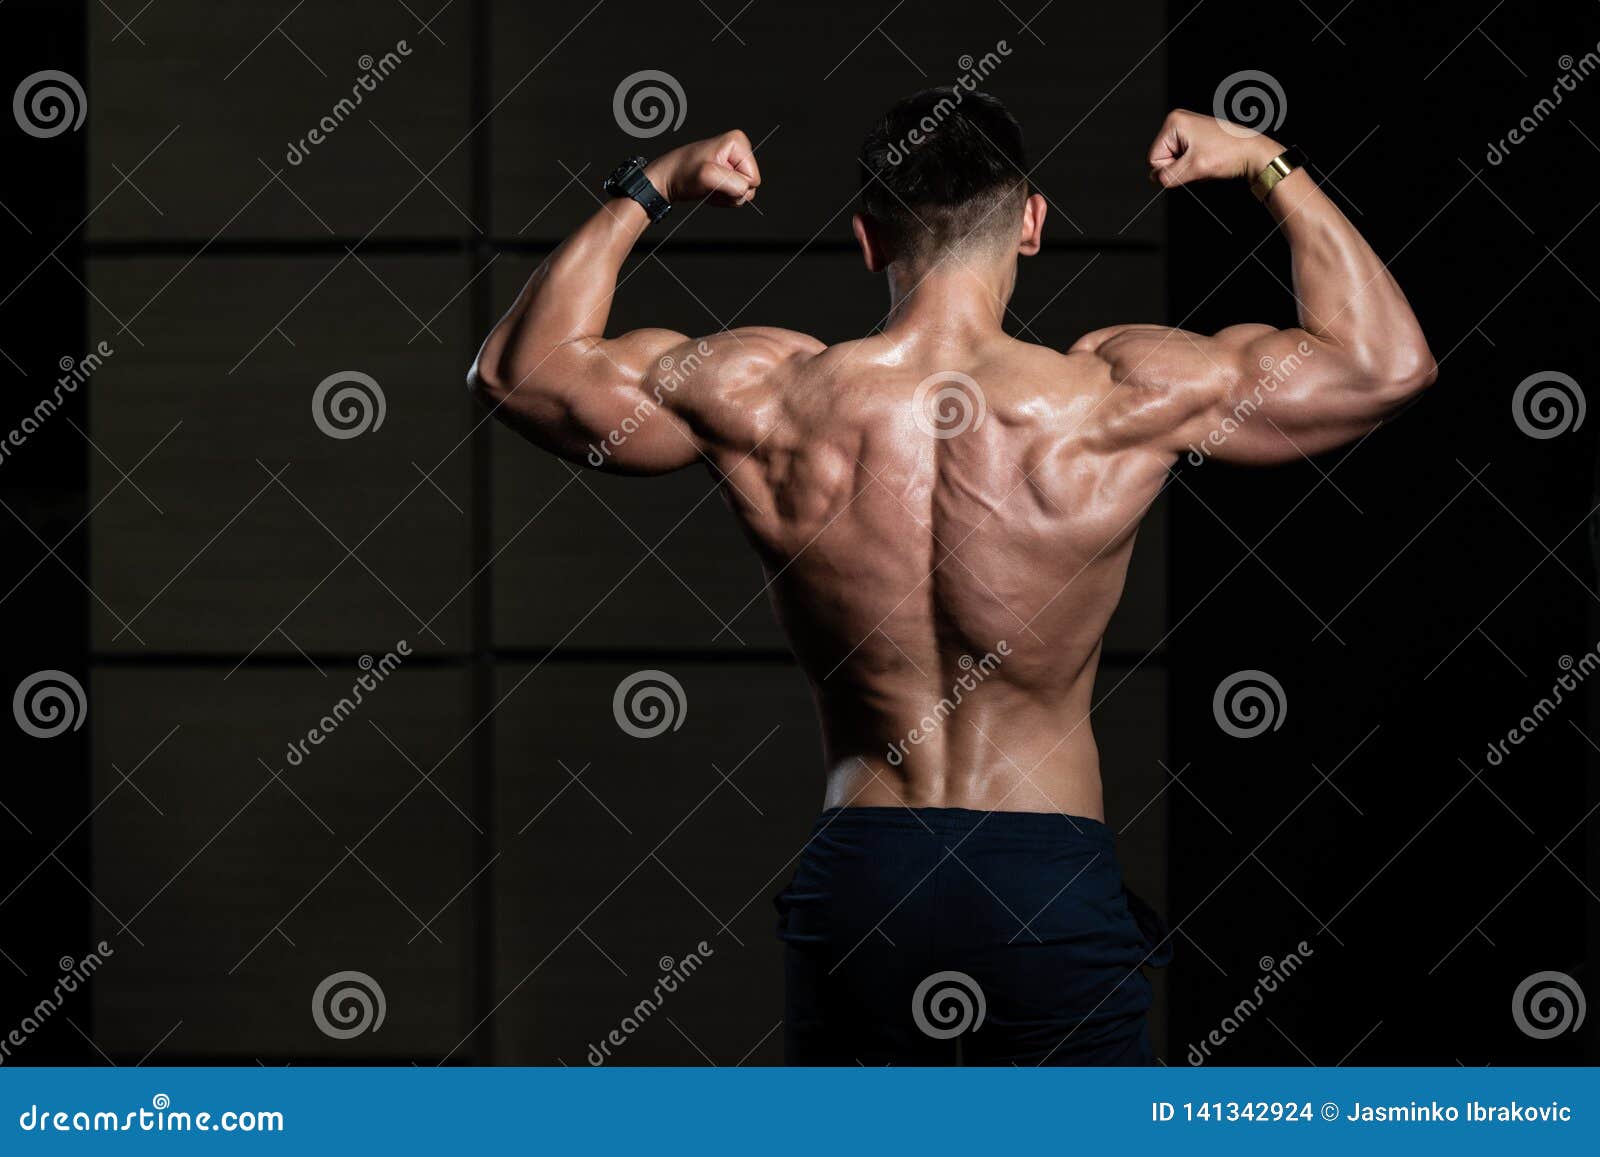 Images Gratuites : homme, muscle, organe, noir, cou, Photographie